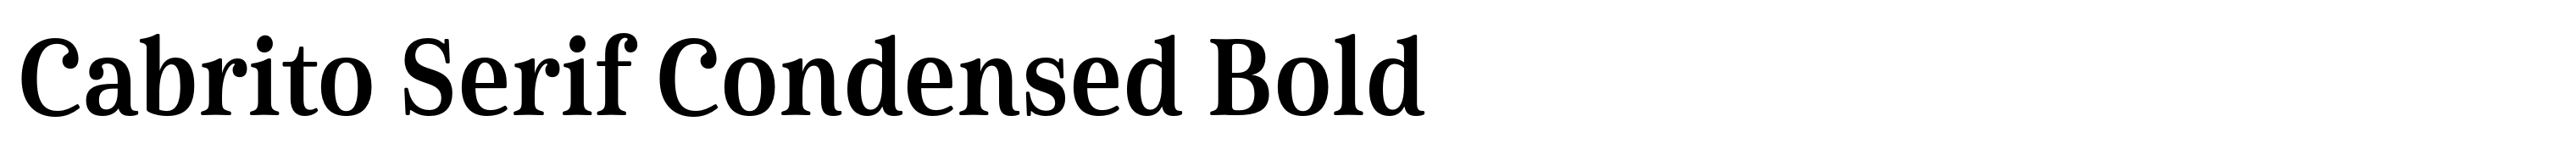 Cabrito Serif Condensed Bold